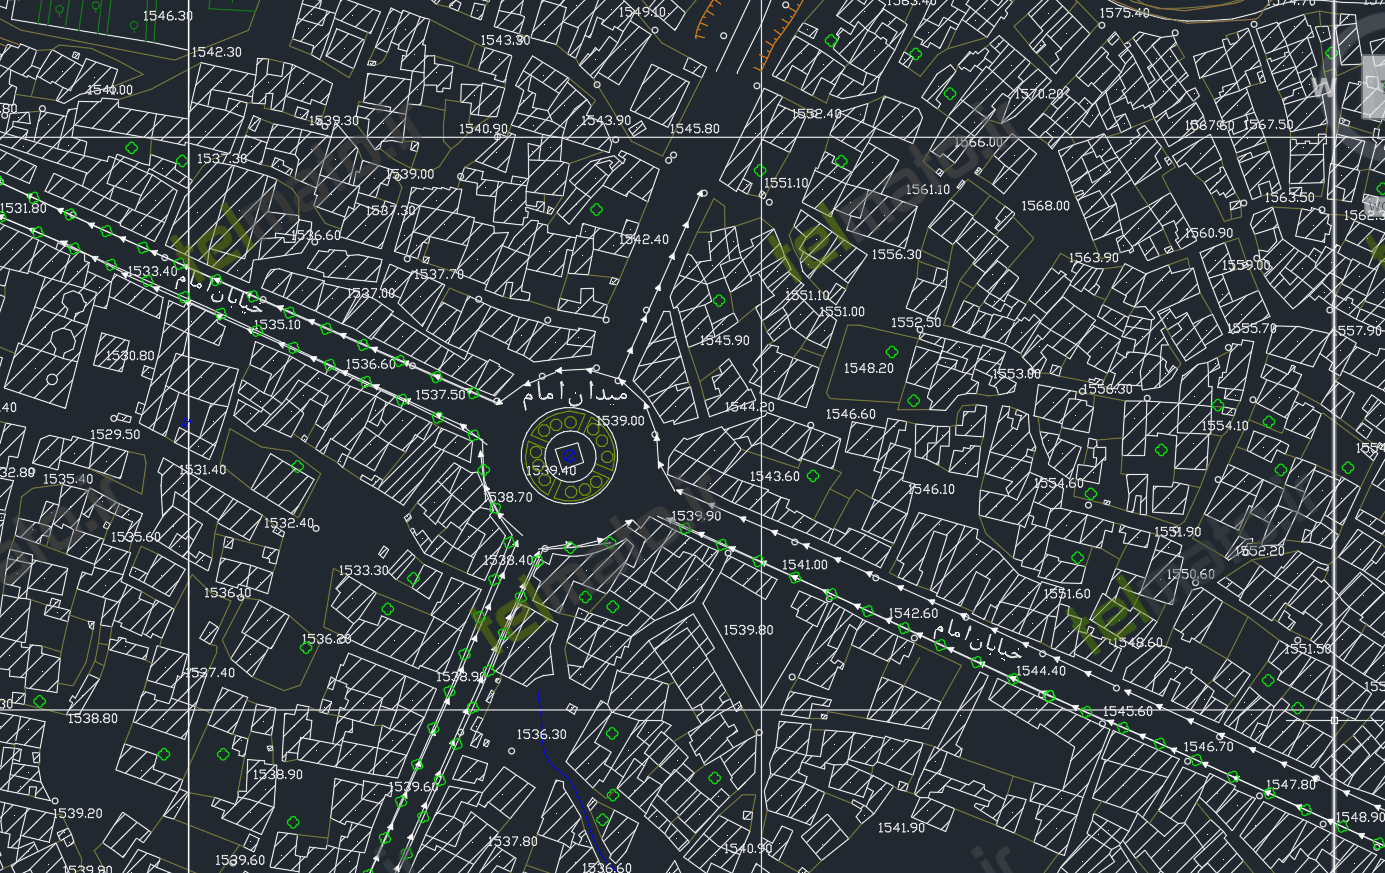 دانلود رایگان کامل نقشه اتوکد شهر بانه با فرمت DWG + فایل آماده